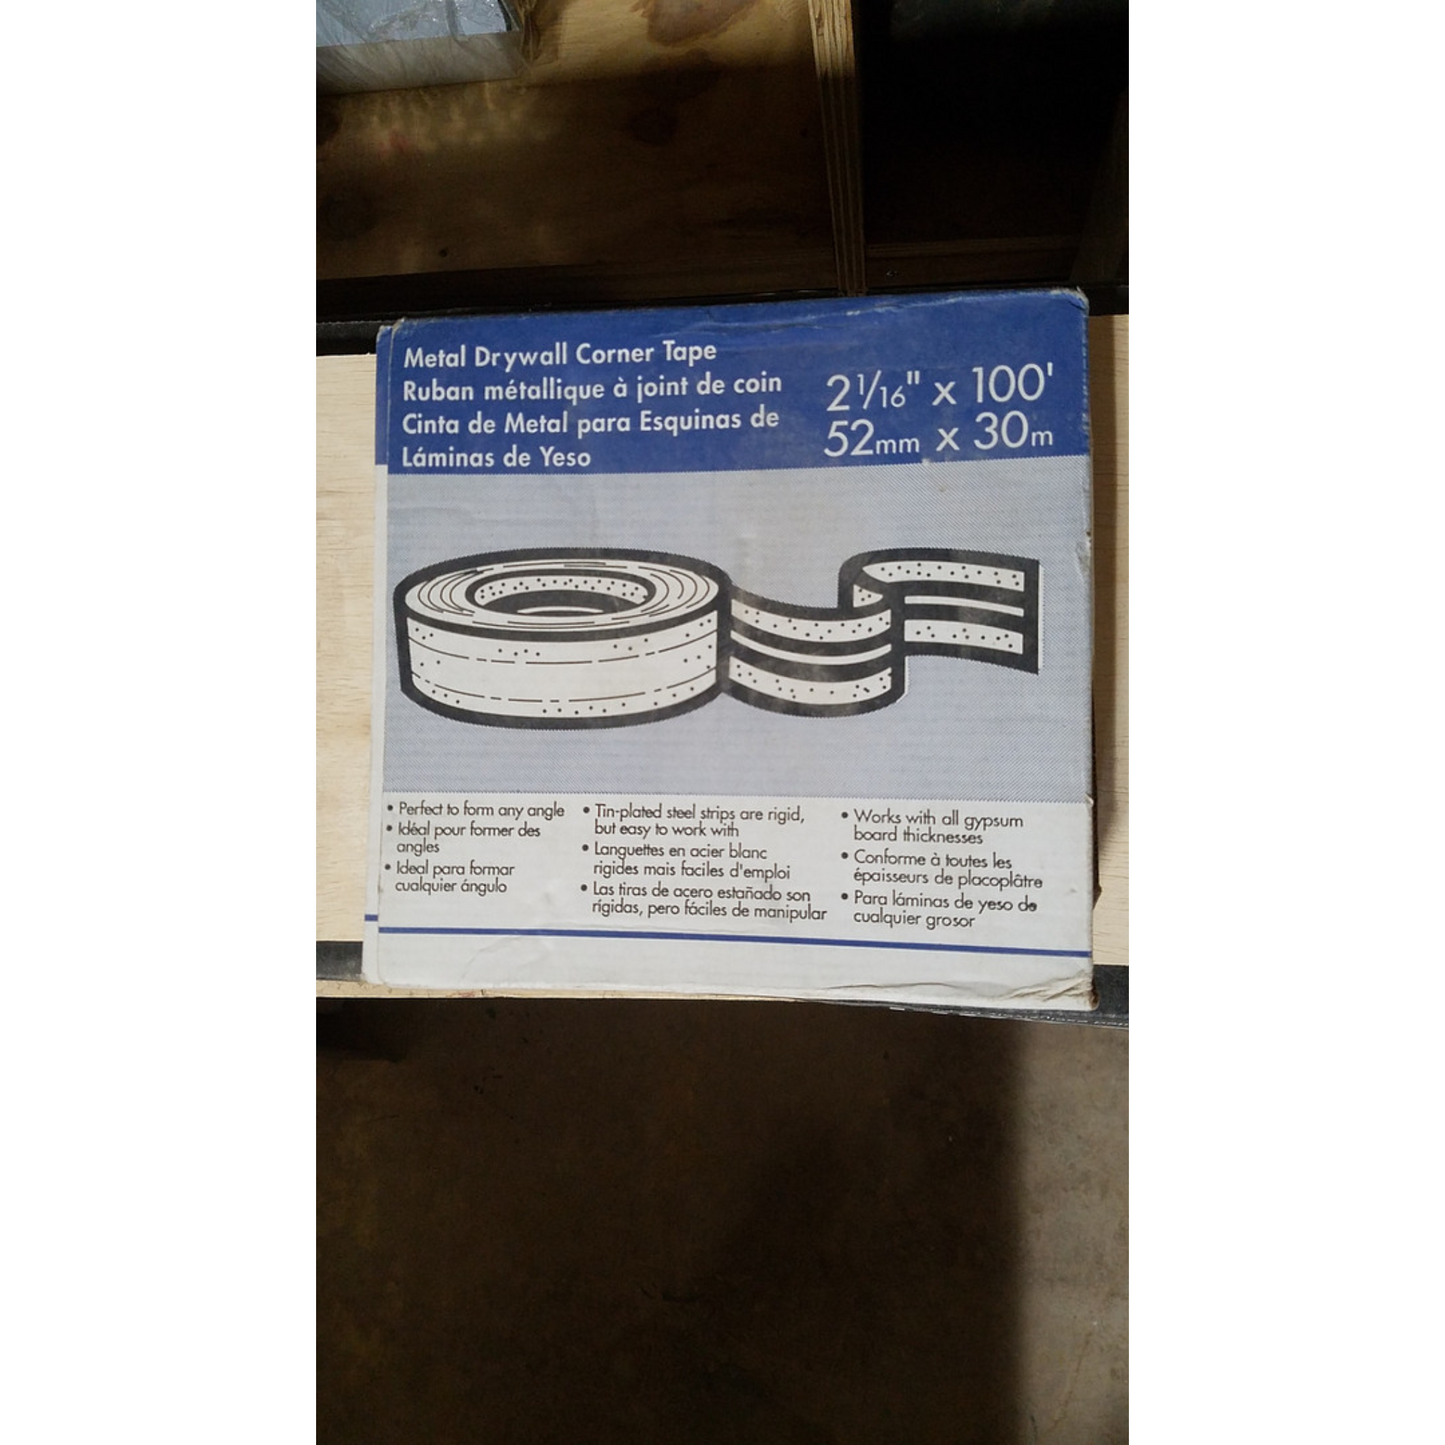 Metal Drywall Corner Tape (caja con rollo de 100') / Láminas de yeso